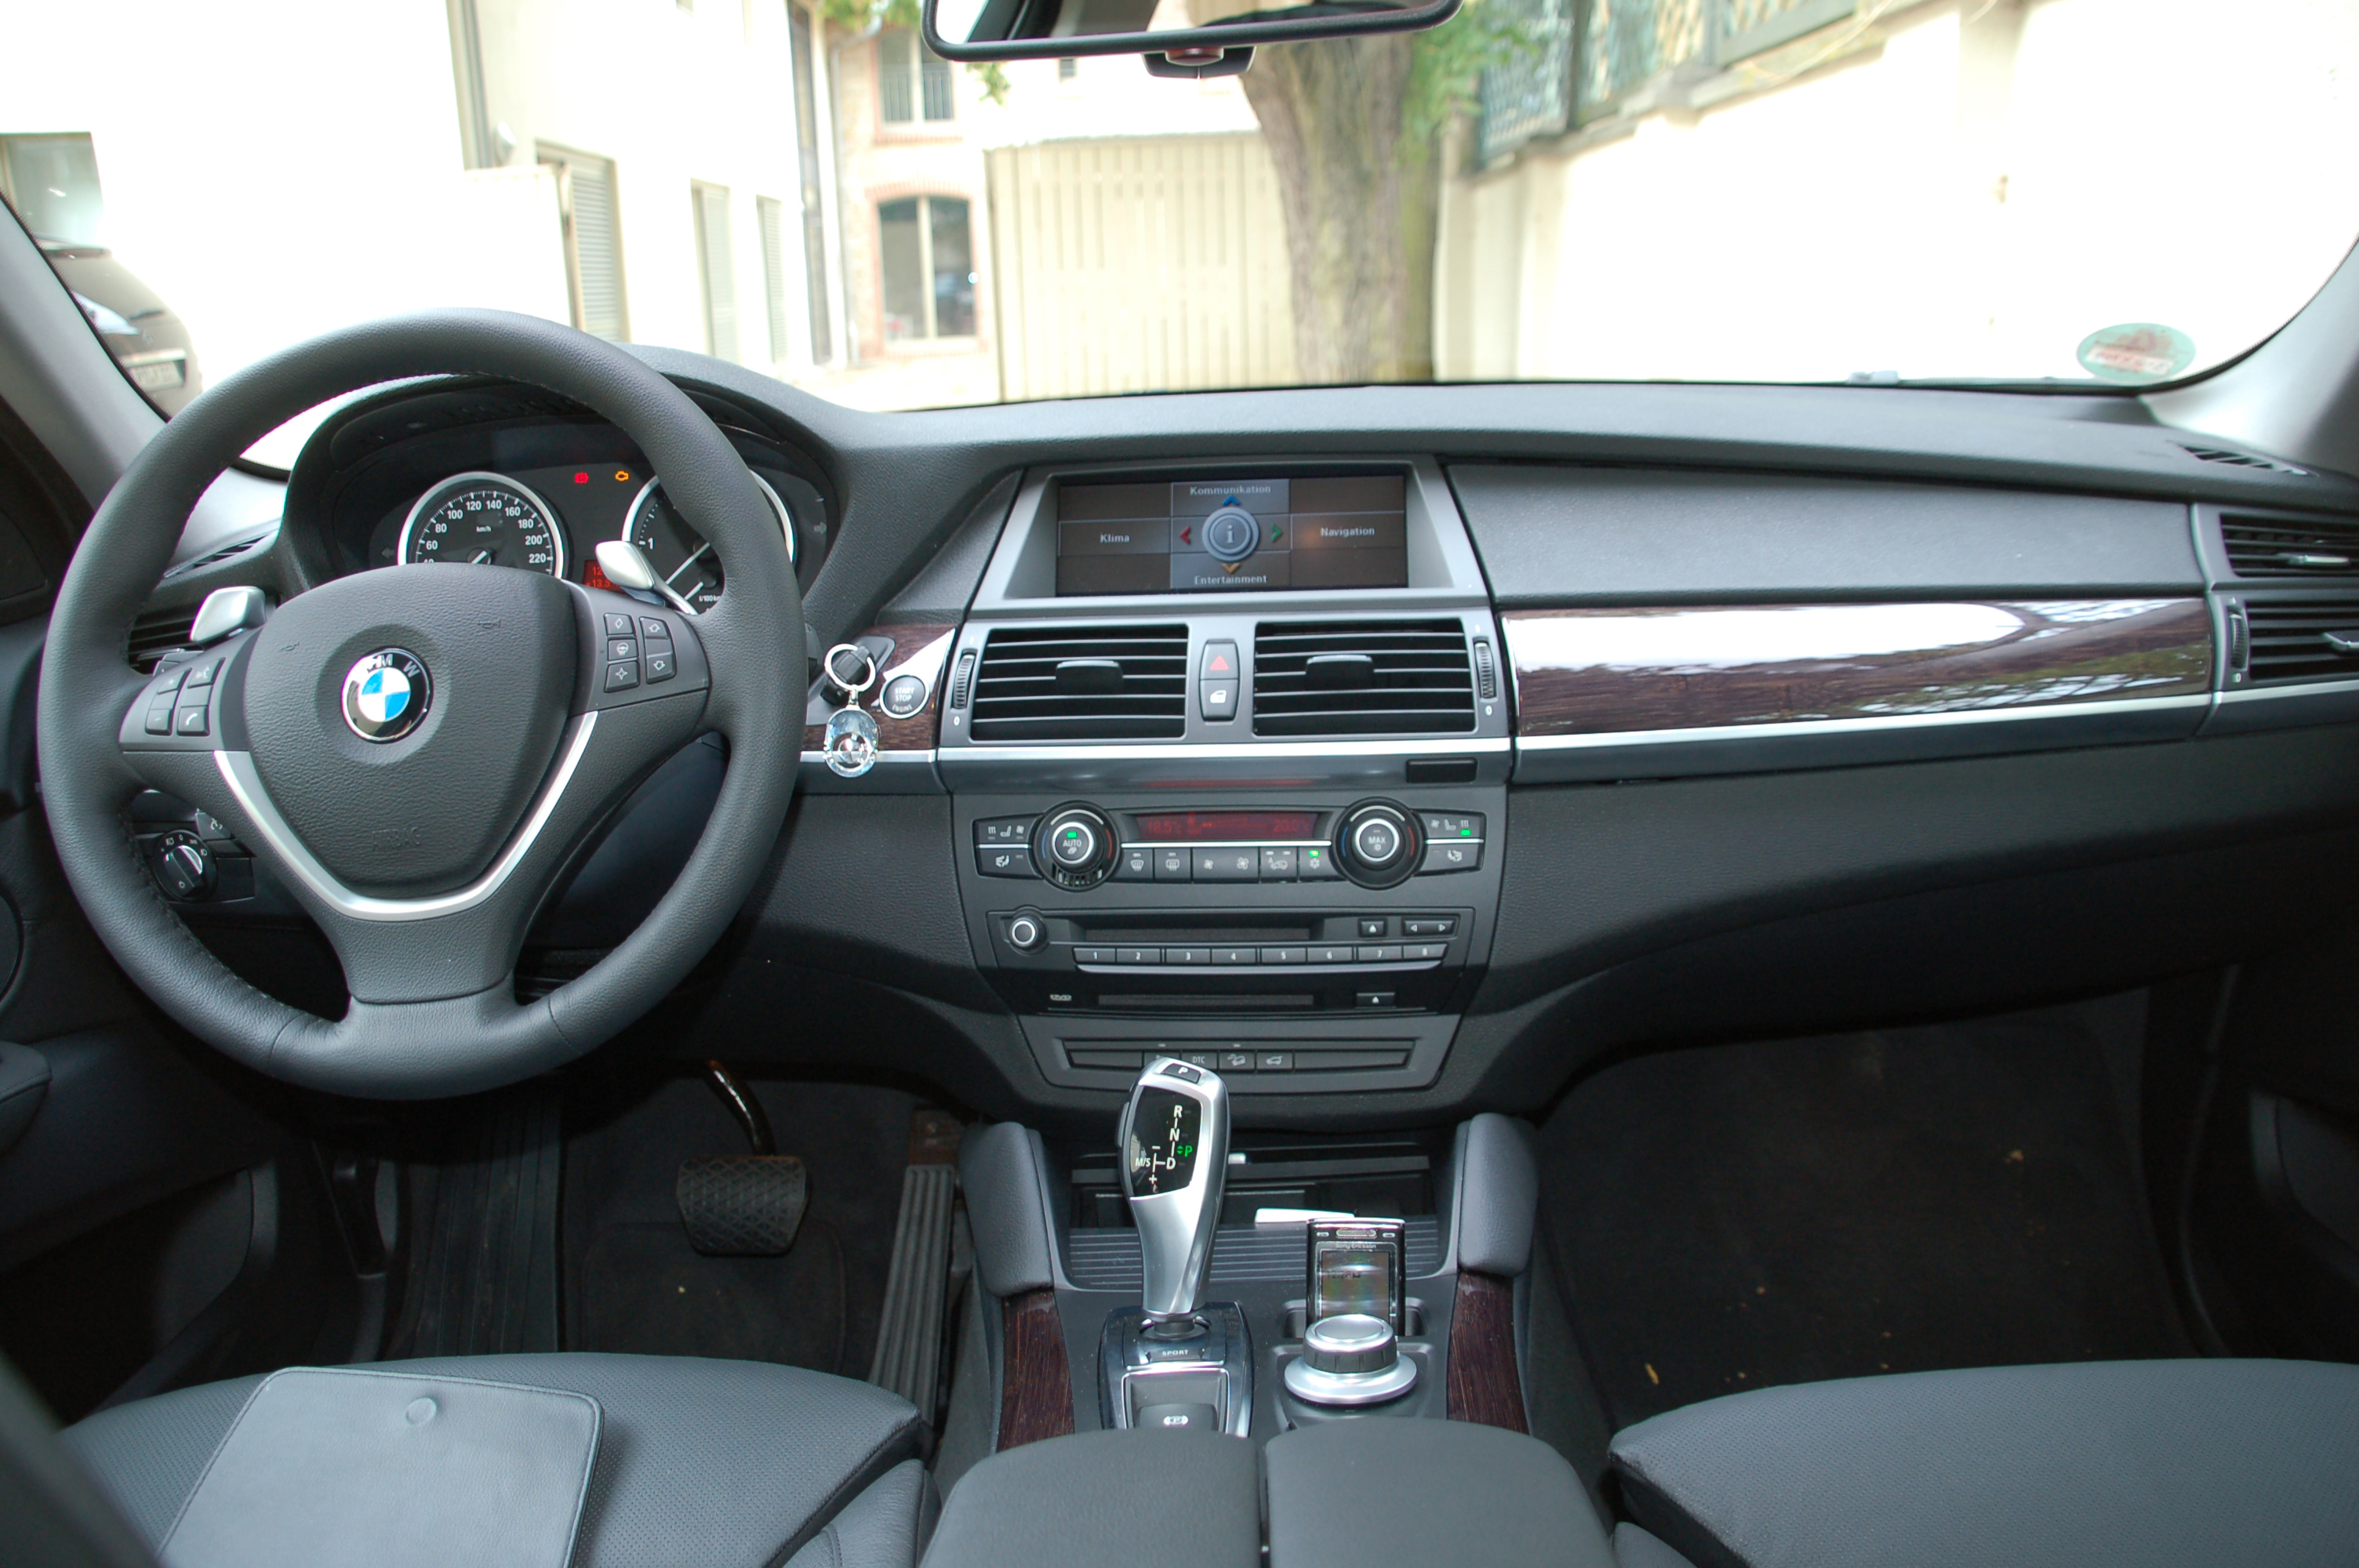  BMW X6 интерьер 